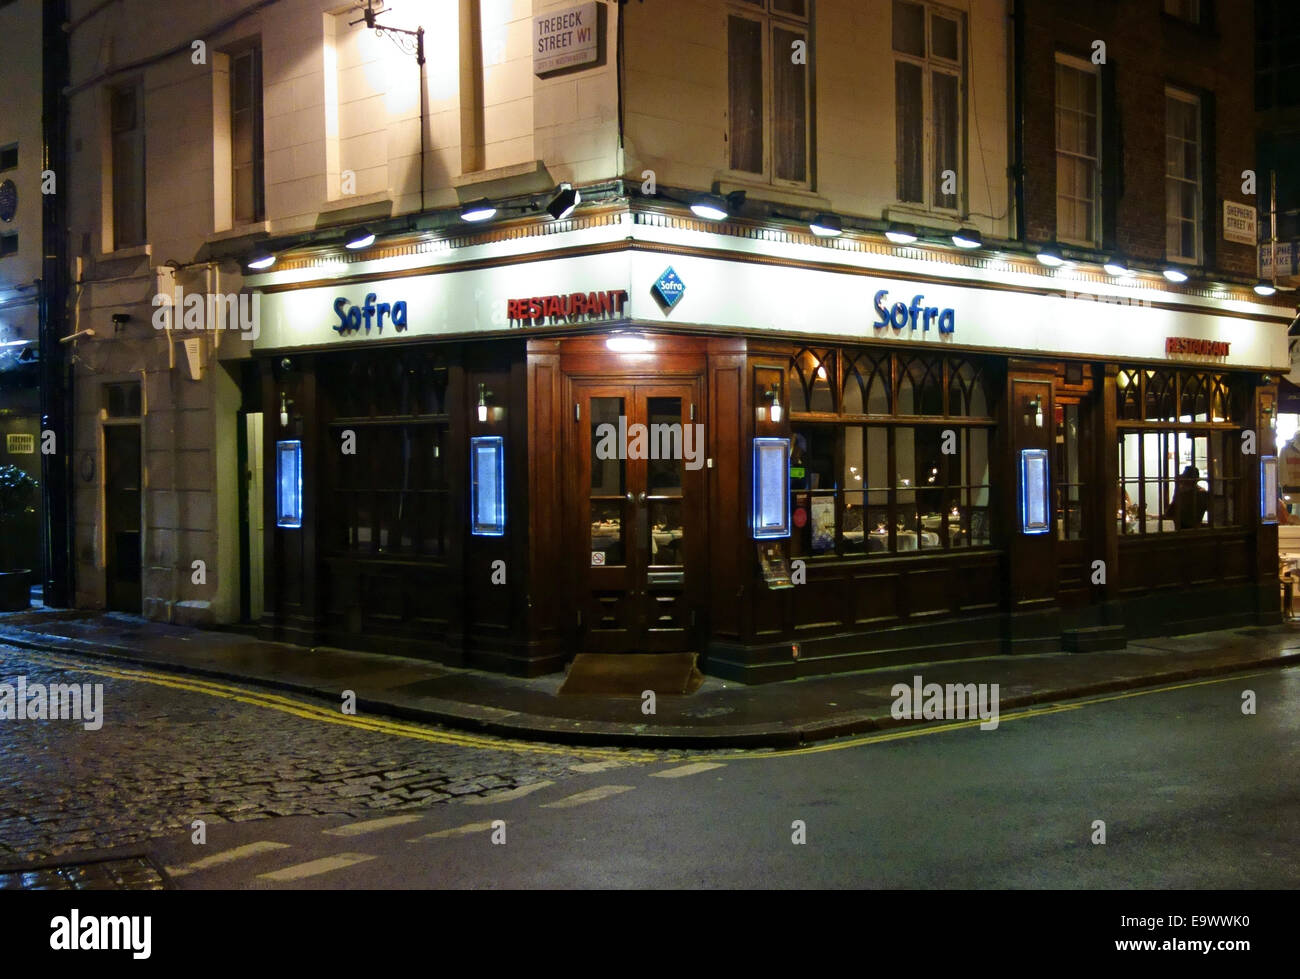 Sofra Turkish restaurant in Mayfair, London Stock Photo